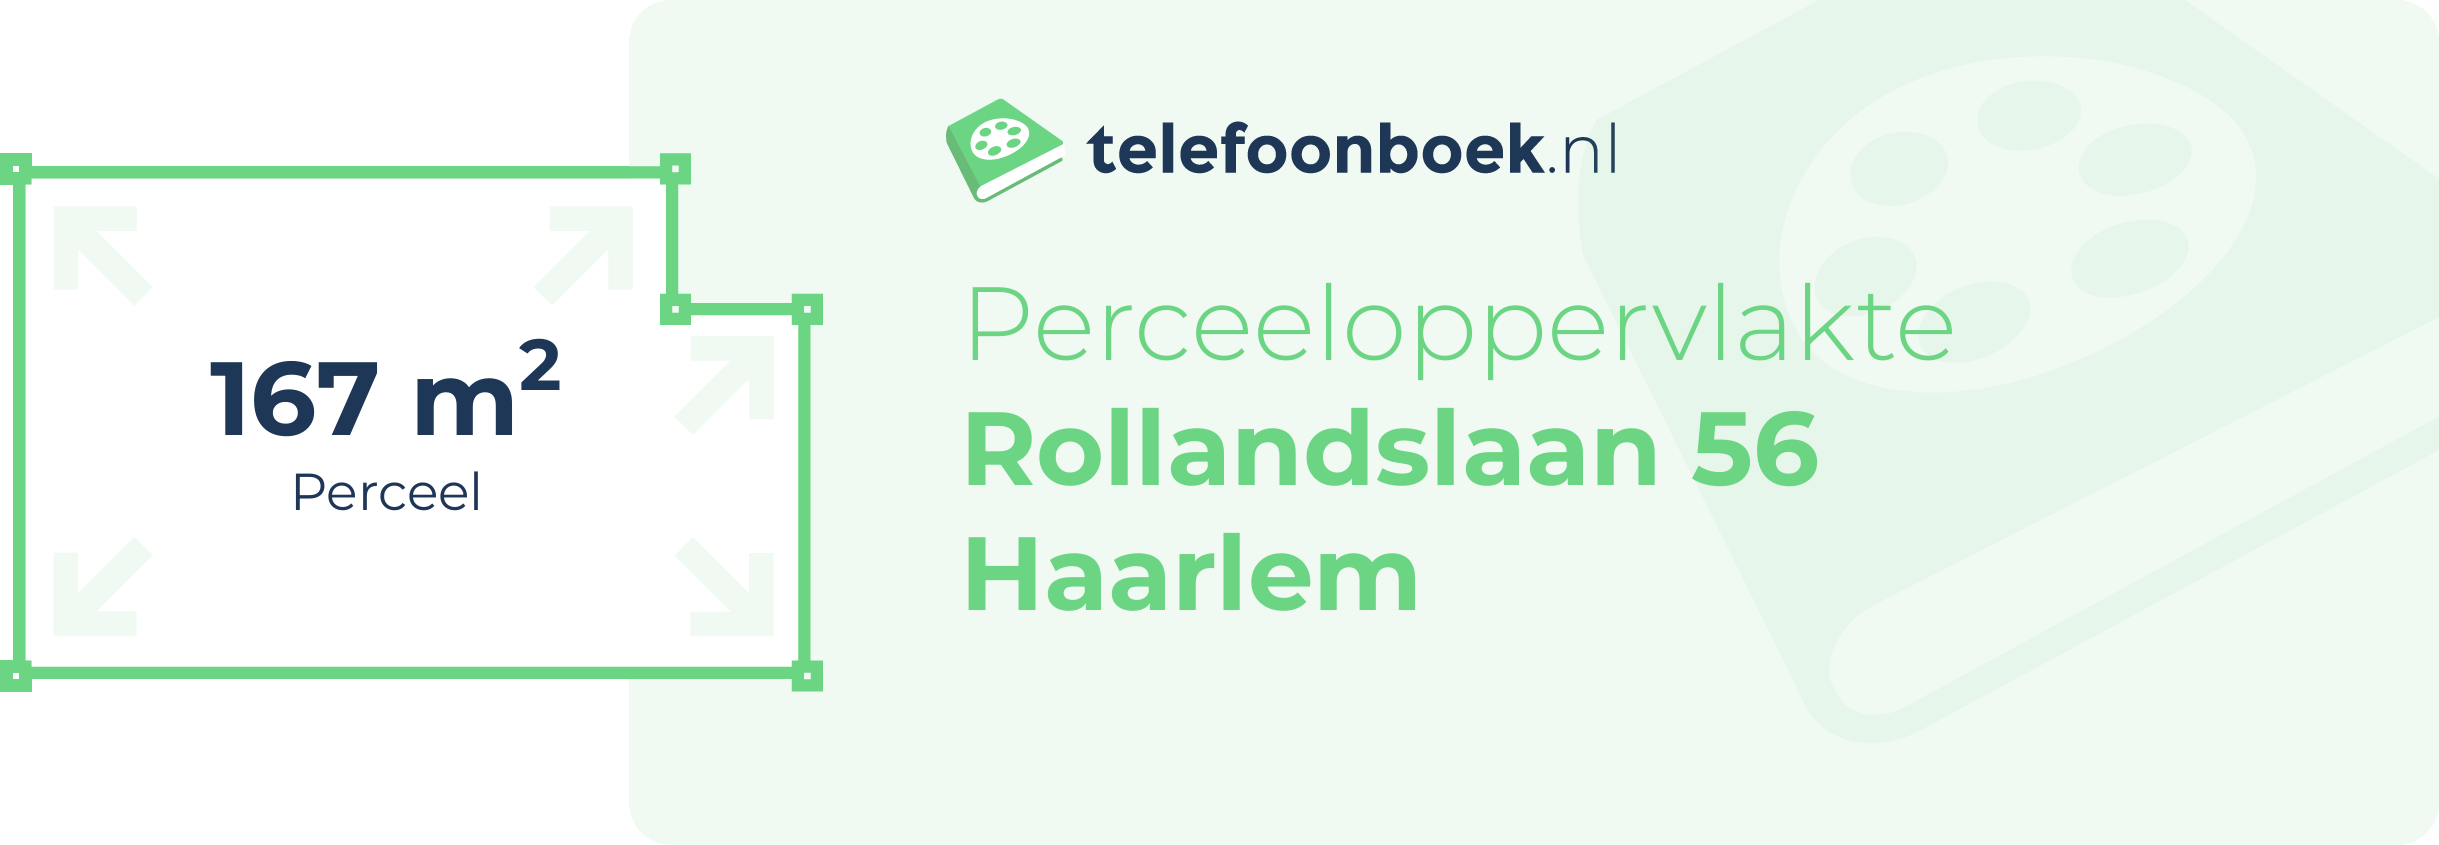 Perceeloppervlakte Rollandslaan 56 Haarlem